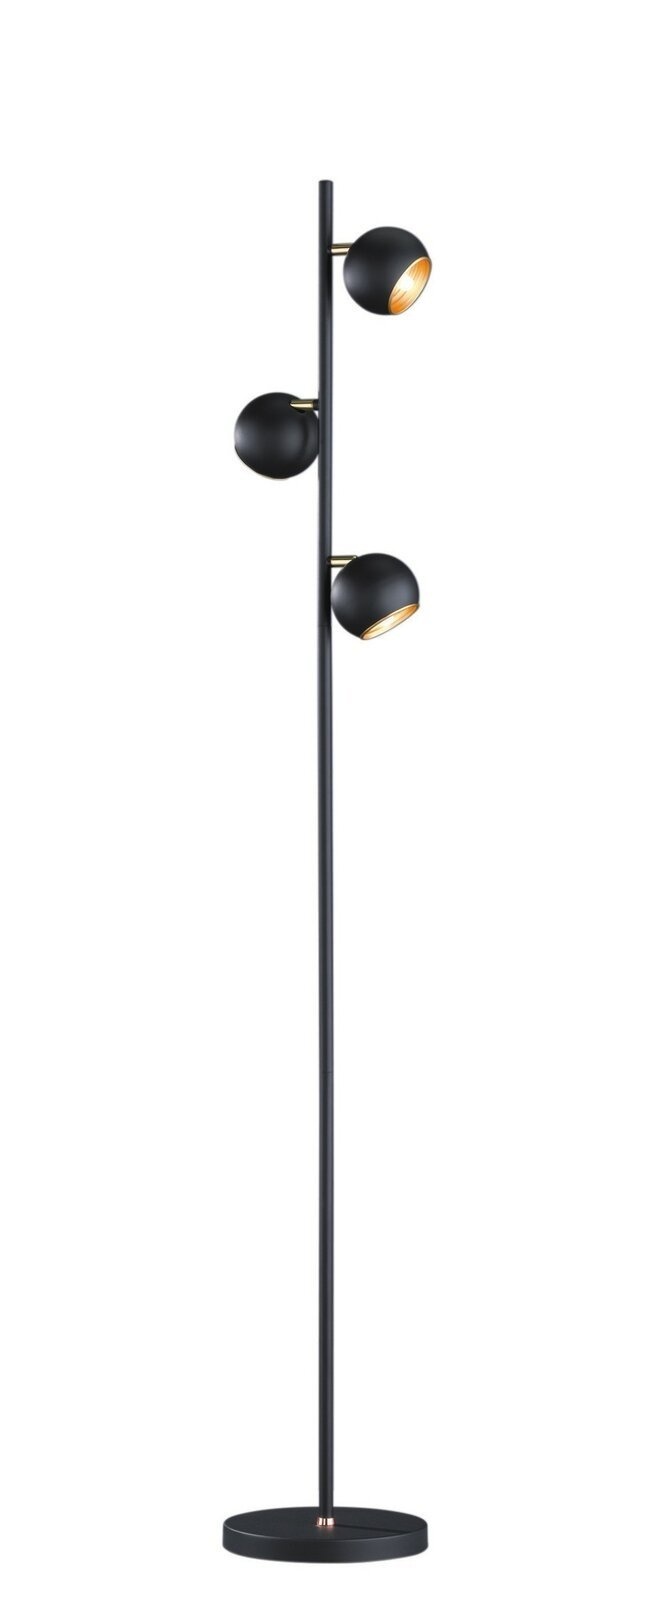 Ist zu günstig Kaufen-Dulaney Leselampe 3 Lampen 155cm - Schwarz. Dulaney Leselampe 3 Lampen 155cm - Schwarz <![CDATA[Die Stehleuchte aus dieser Serie hat ein modernes Design und ist vielseitig einsetzbar. Die dreiflammige Stehleuchte ist ideal als zusätzliches Licht neben de